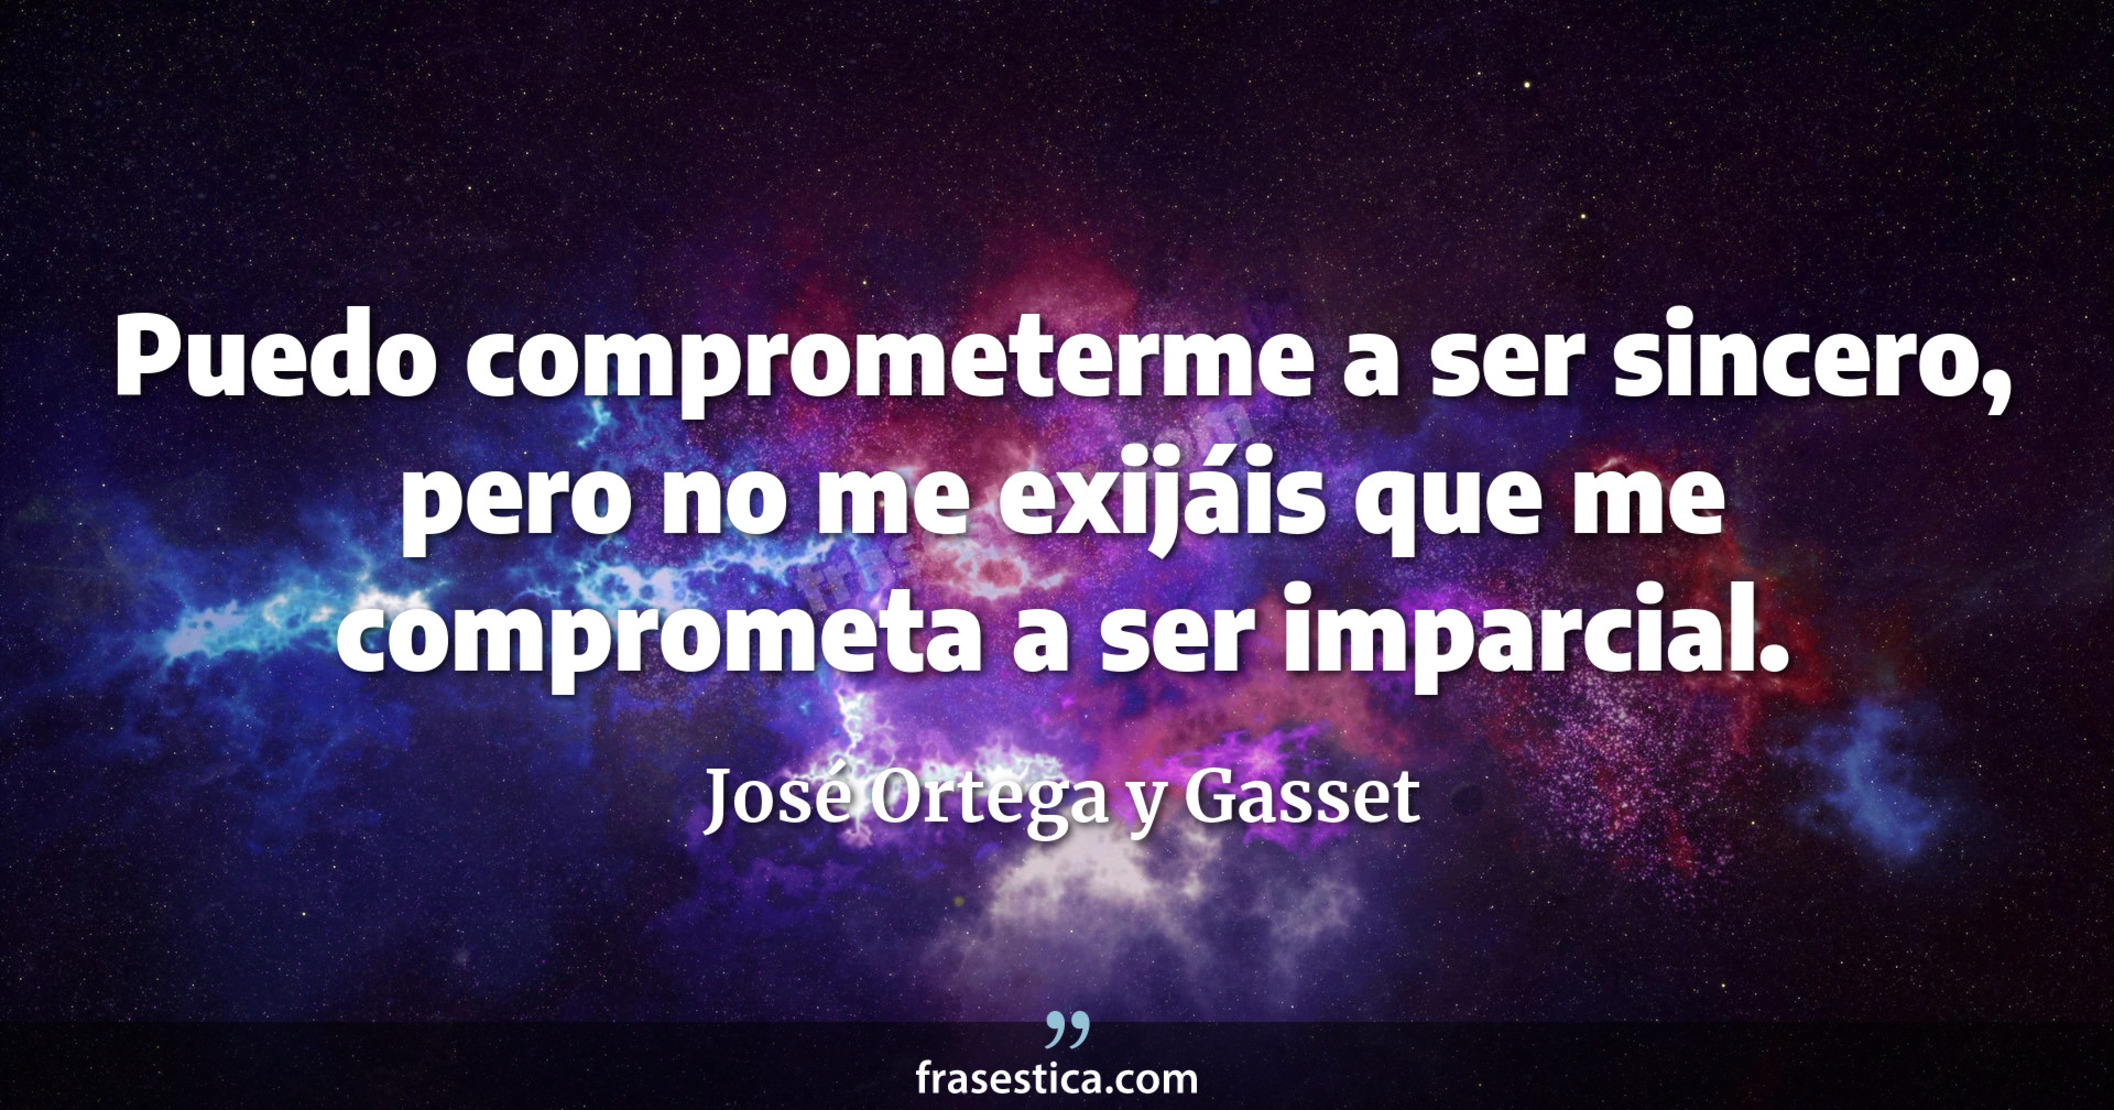 Puedo comprometerme a ser sincero, pero no me exijáis que me comprometa a ser imparcial. - José Ortega y Gasset